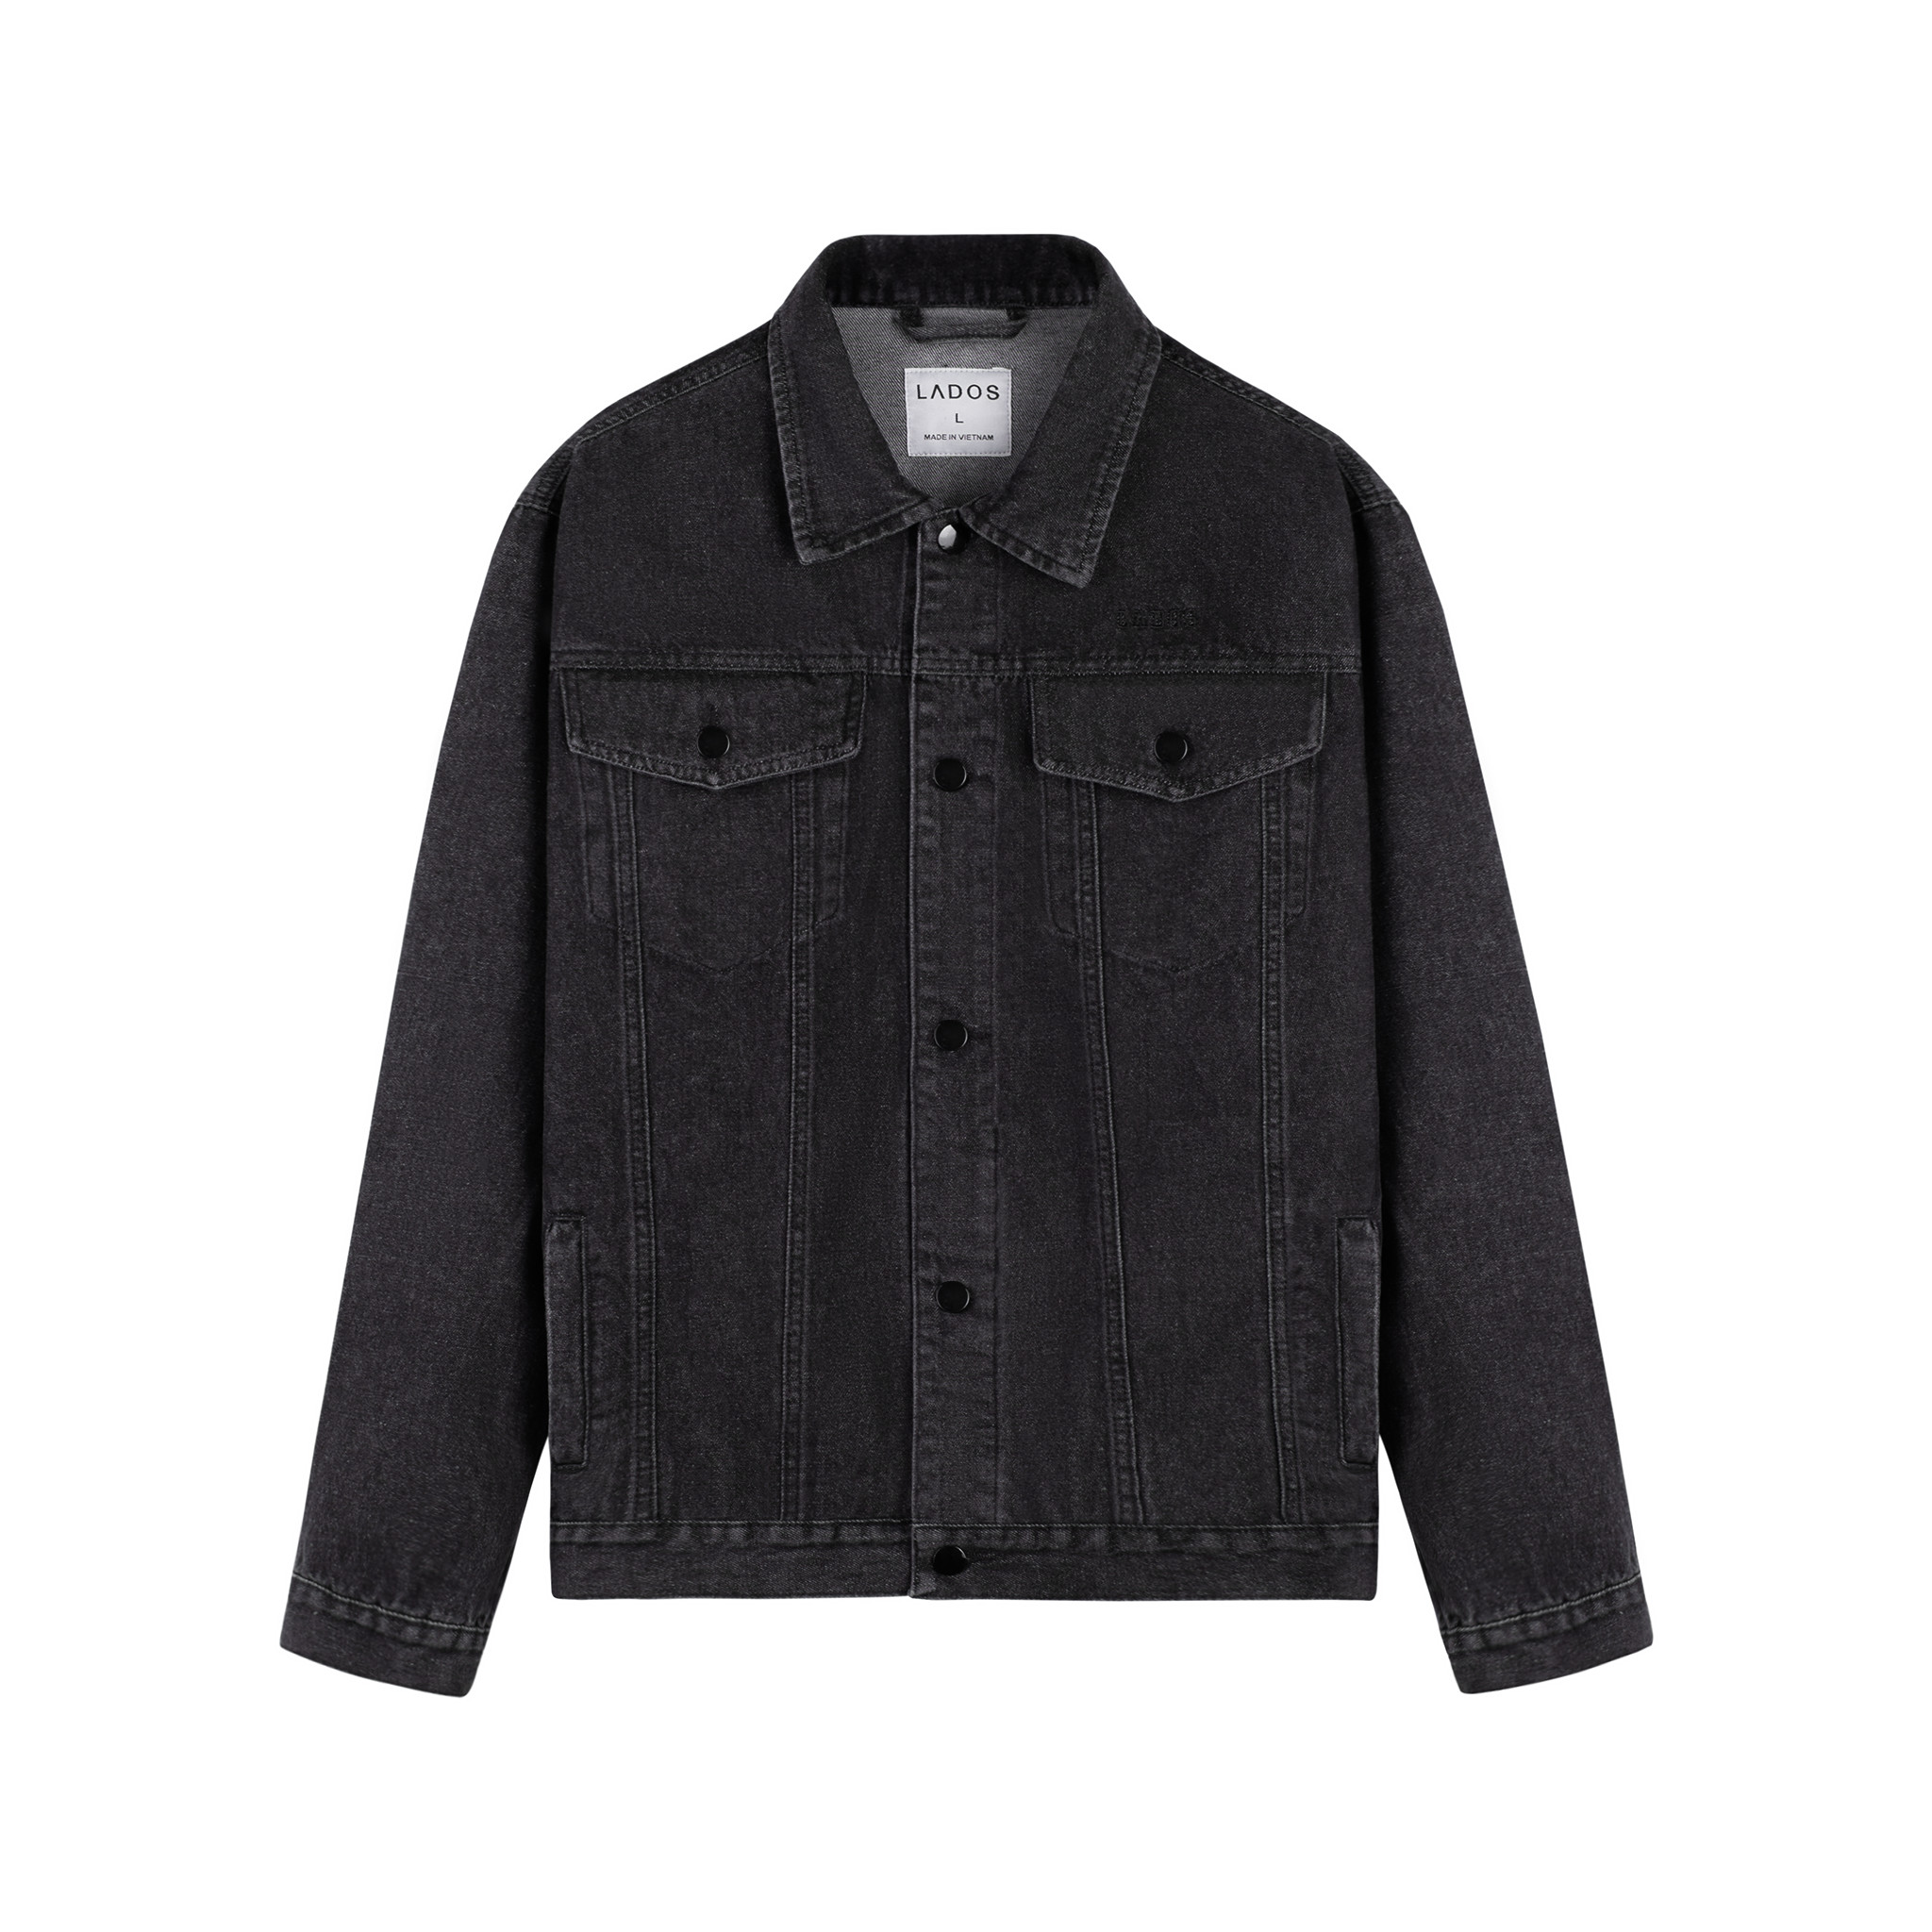 Áo khoác jean nam jacket đen túi hộp cao cấp LADOS-2088 dày dặn, phong cách